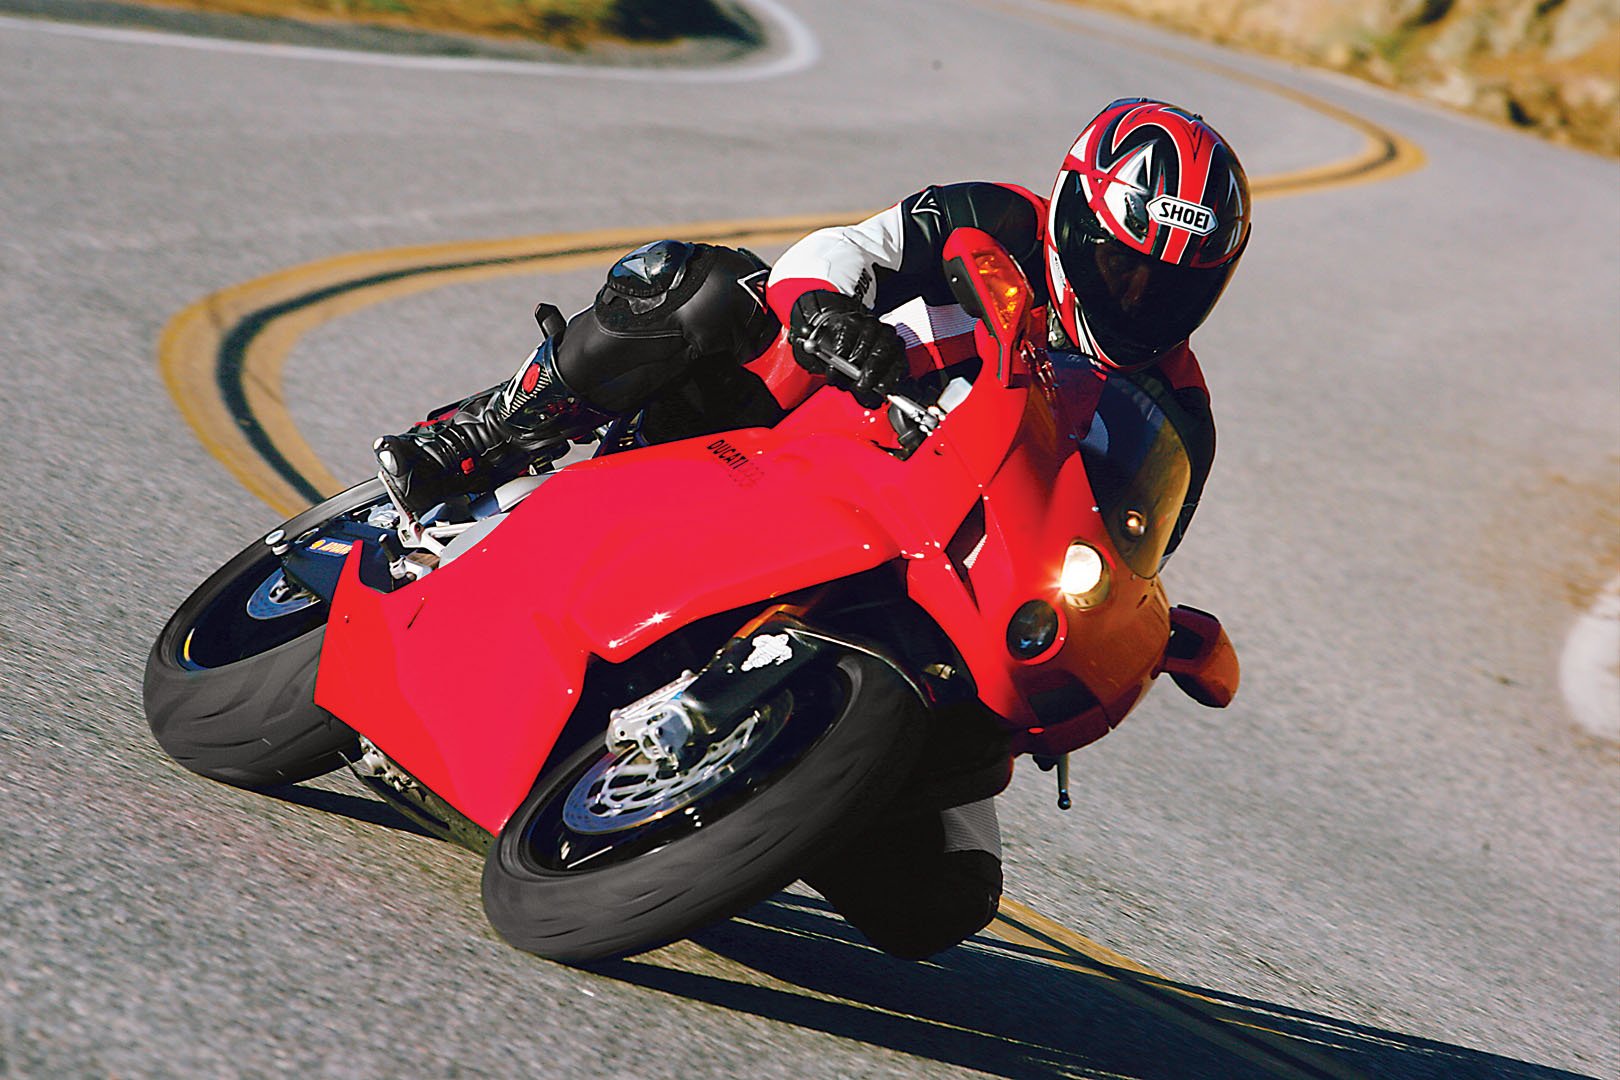 Ducati 999R Review